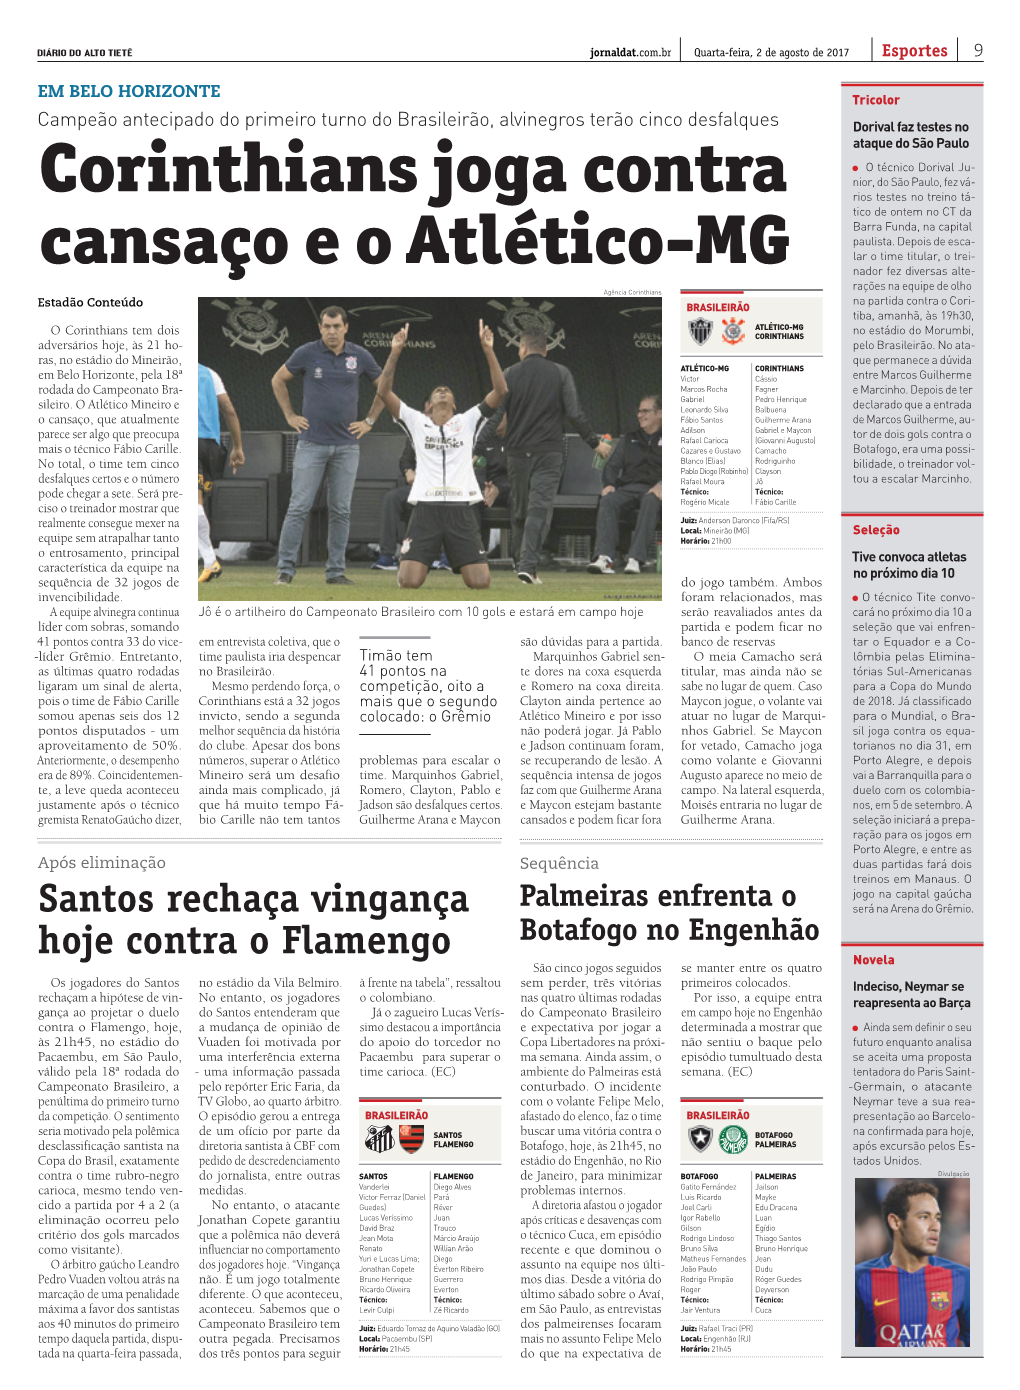 Corinthians Joga Contra Cansaço E O Atlético-MG